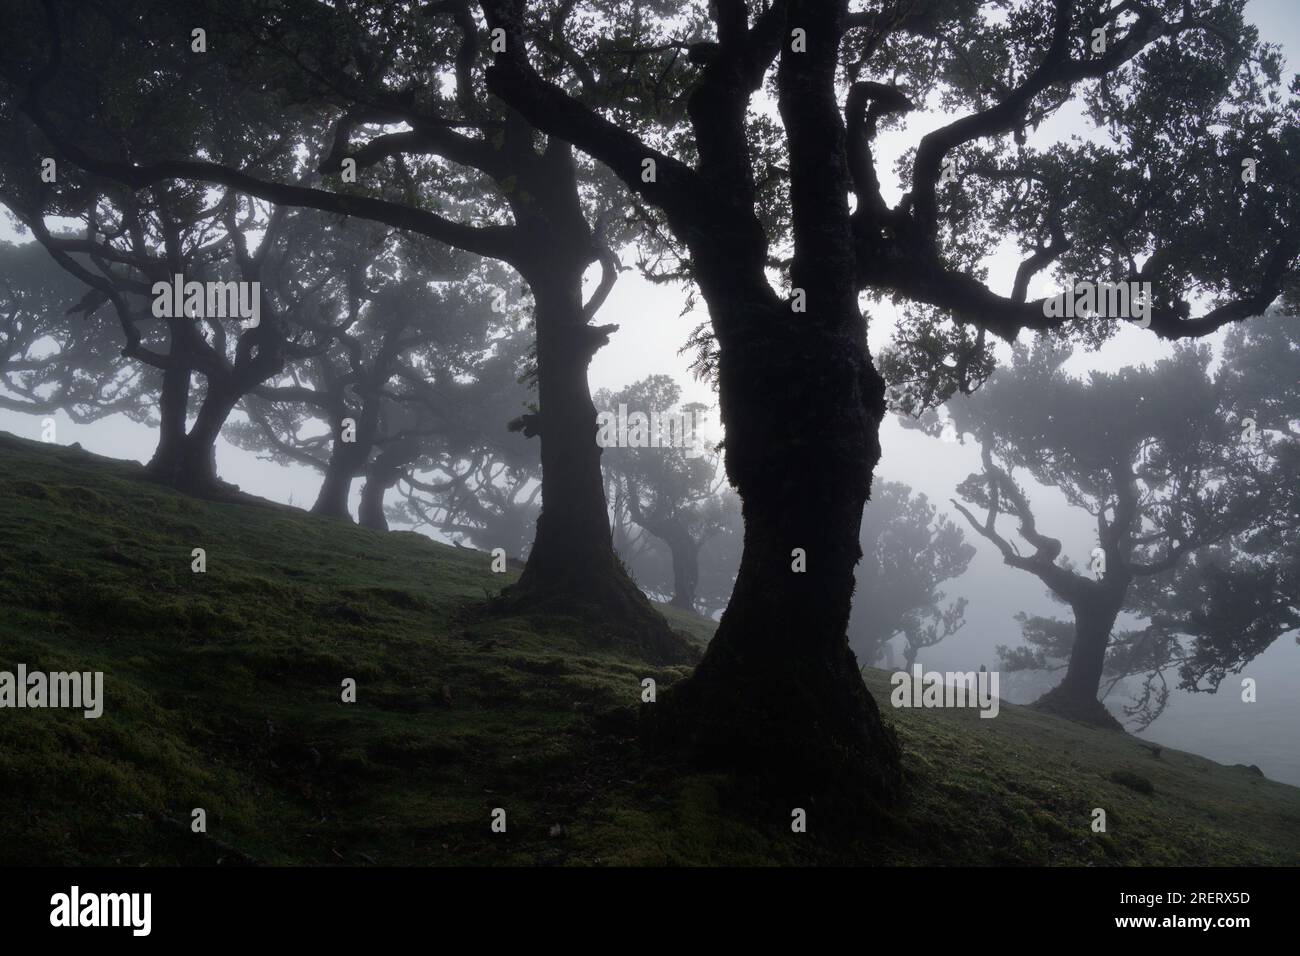 Forêt fanale sur l'île de Madère, lieu emblématique mystique et magique à Porto Moniz, forêt centenaire de Laurier d'exubérance de la Laurissilva, Laurissi Banque D'Images